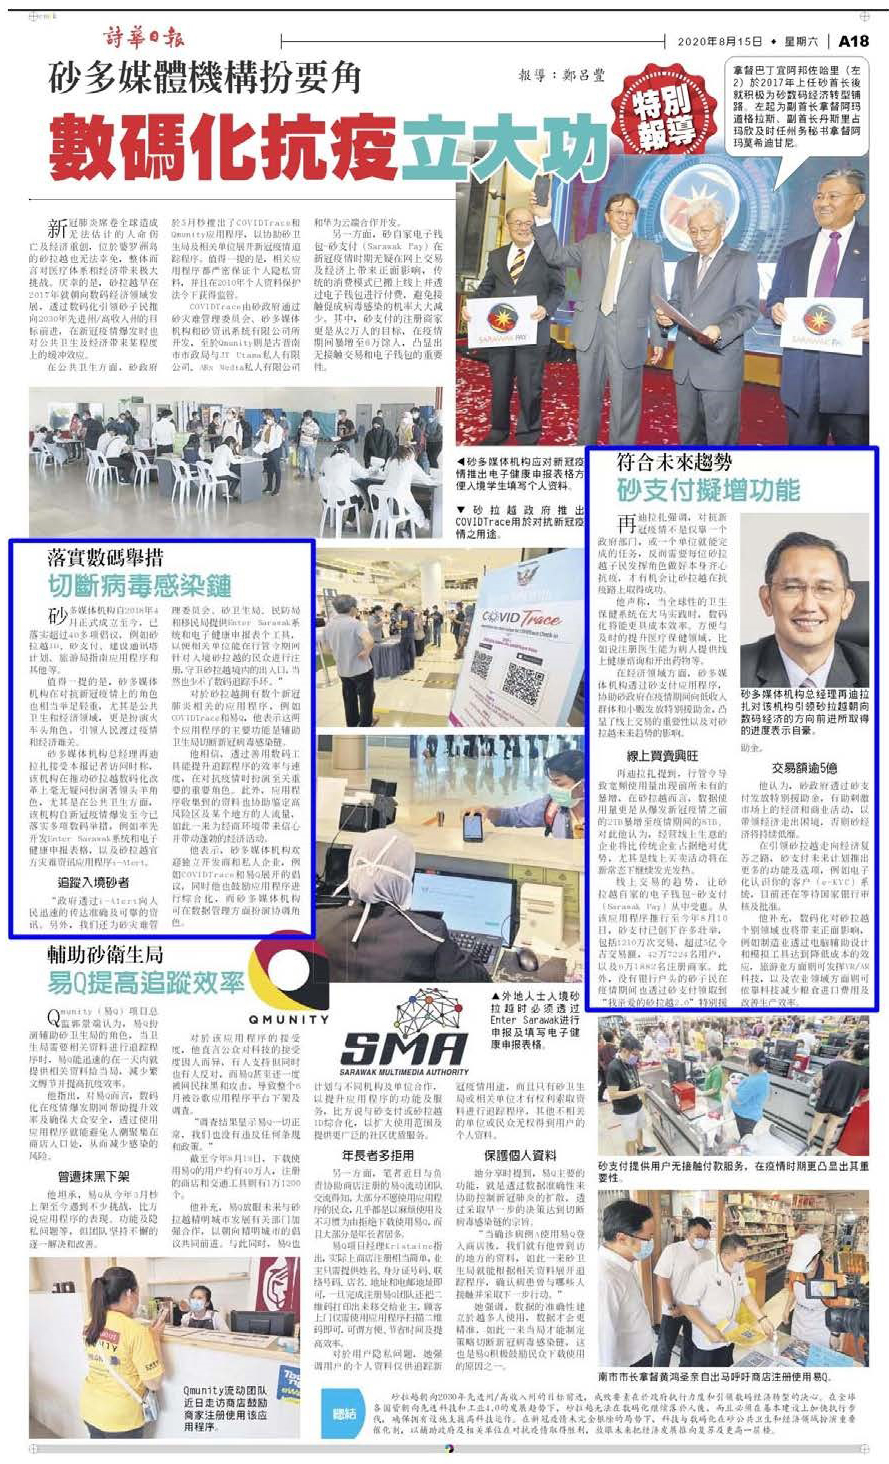 See hua daily news